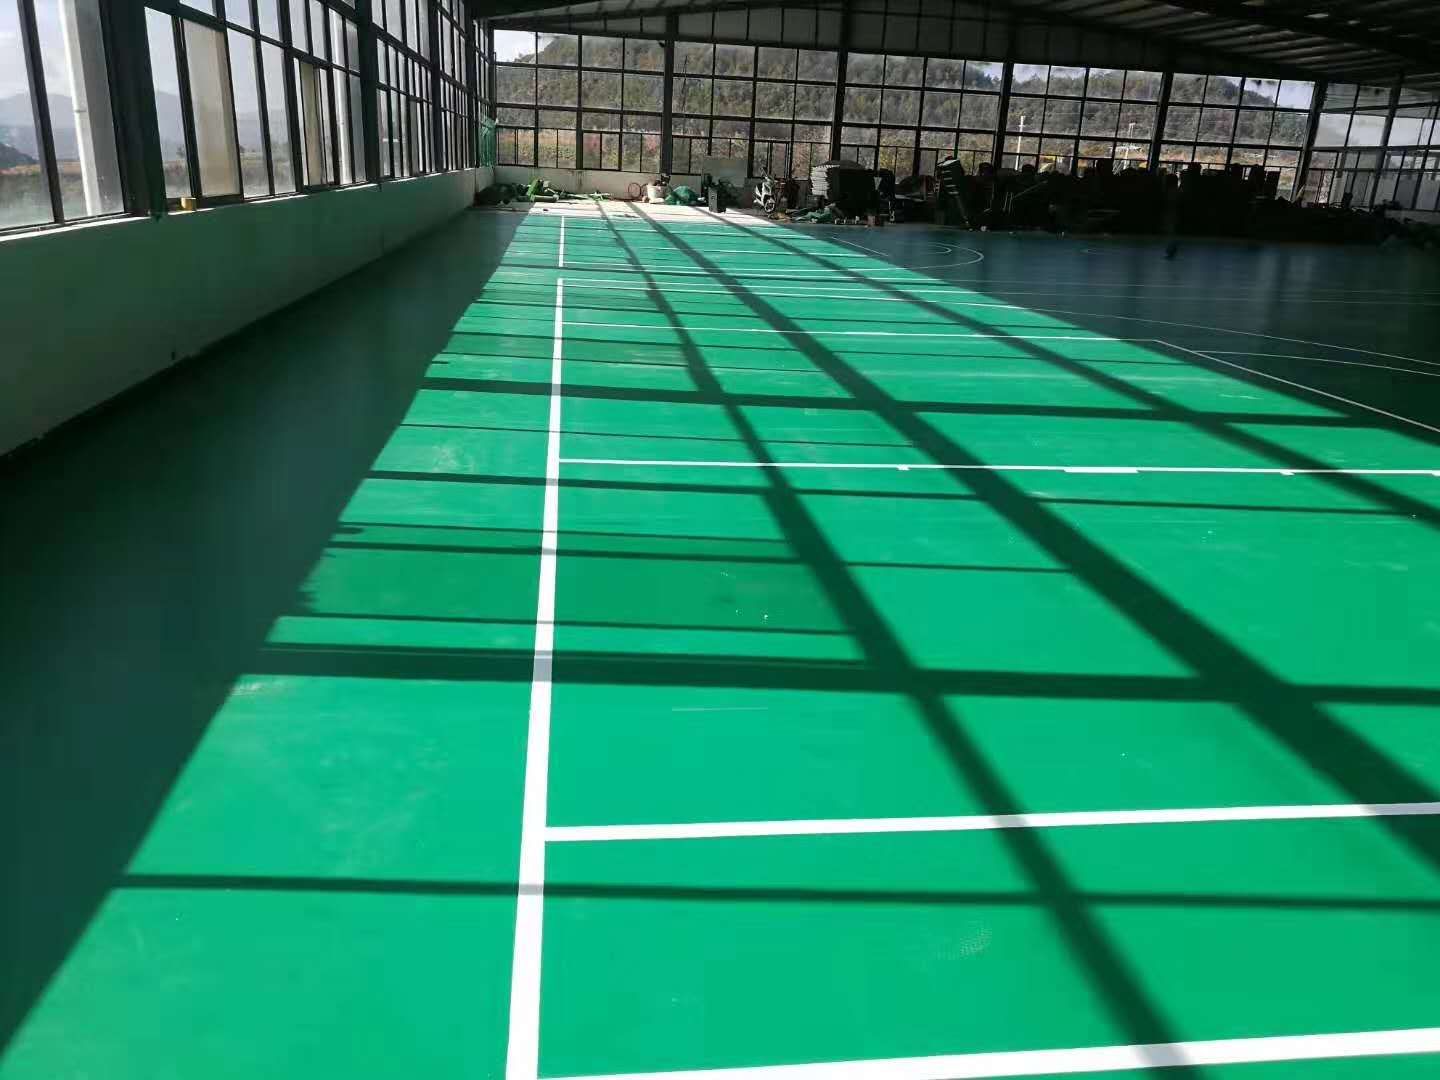 X-5550 Green Sand gainazal BWF-k homologatutako Badminton Kantxa Profesionala